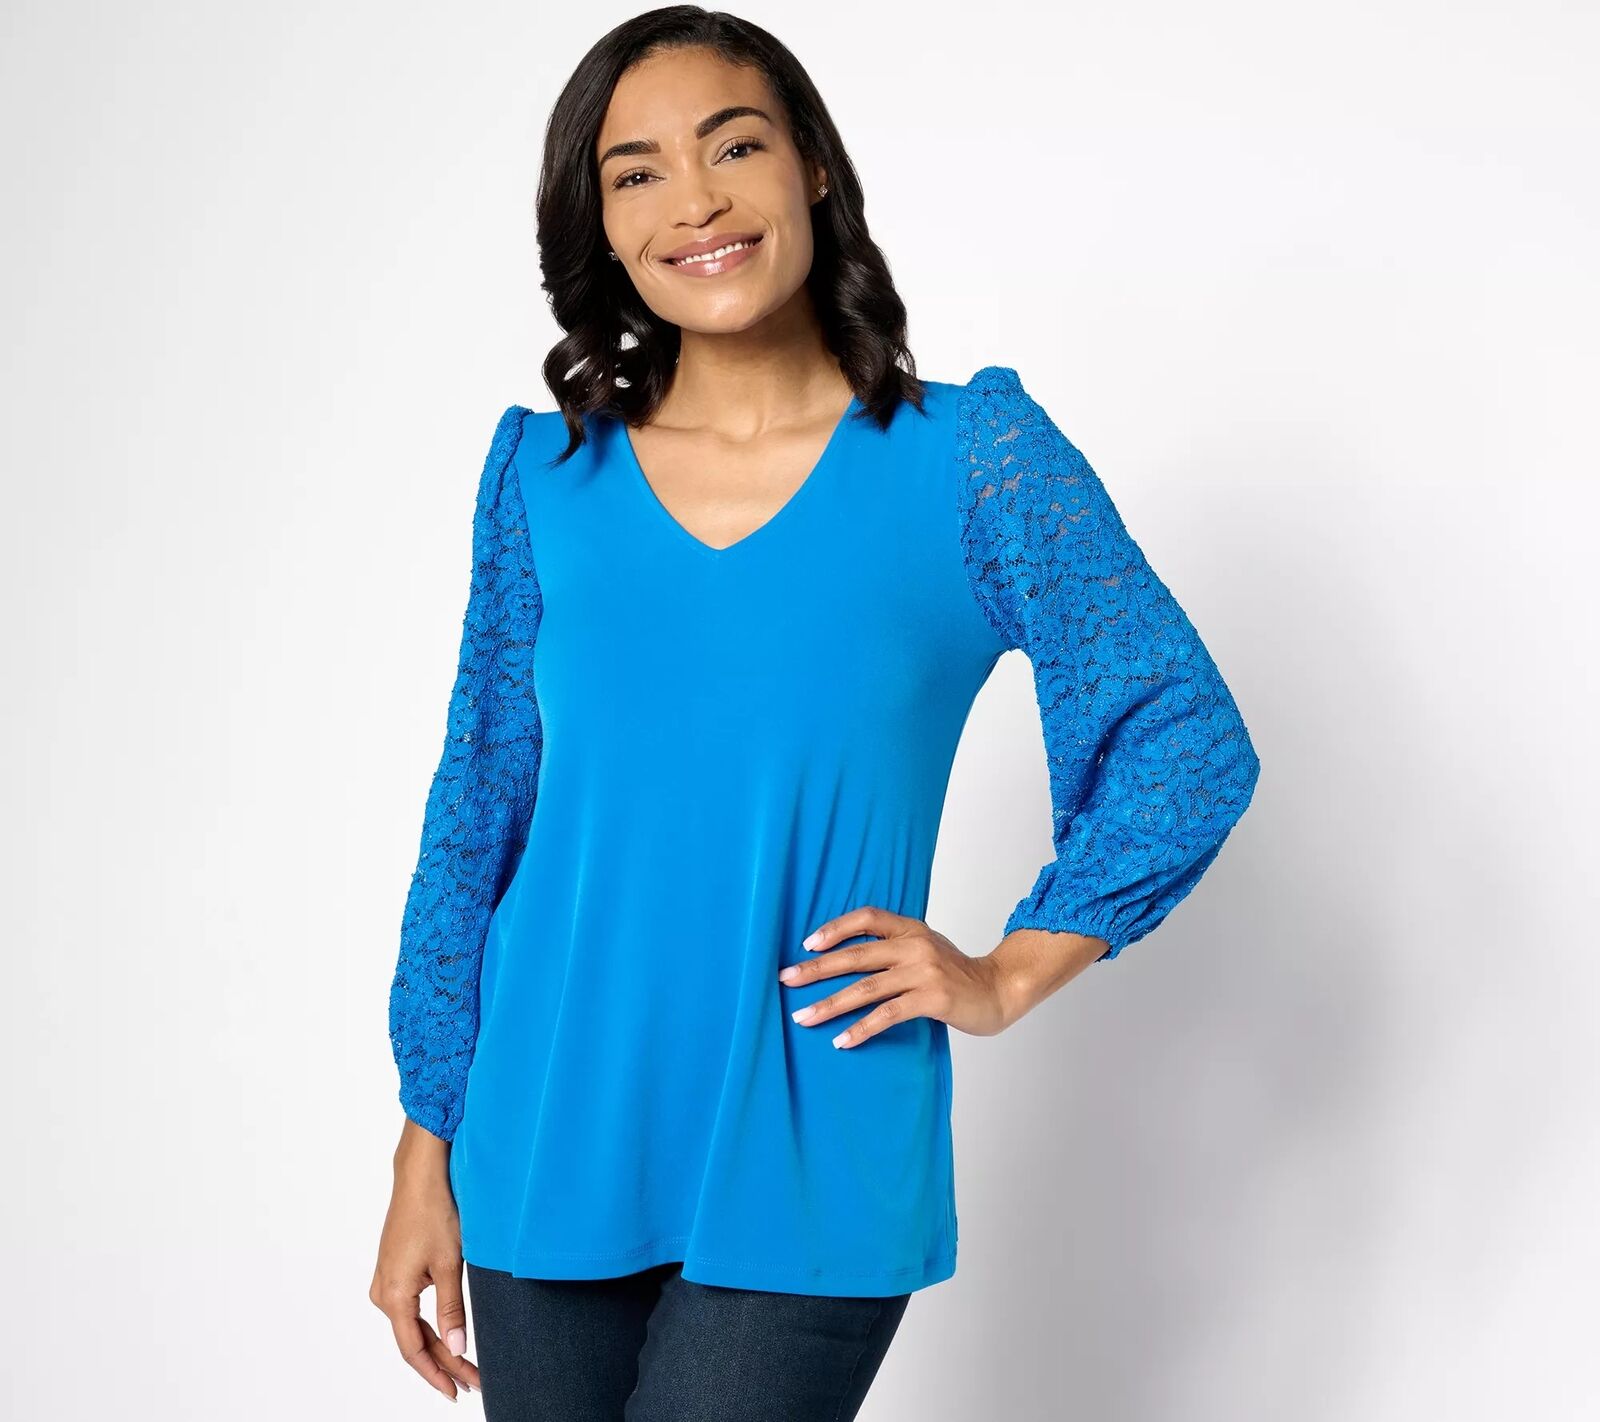 Susan Graver Liquid Knit A-Line Top Lace Shirt Simply Blue XL New